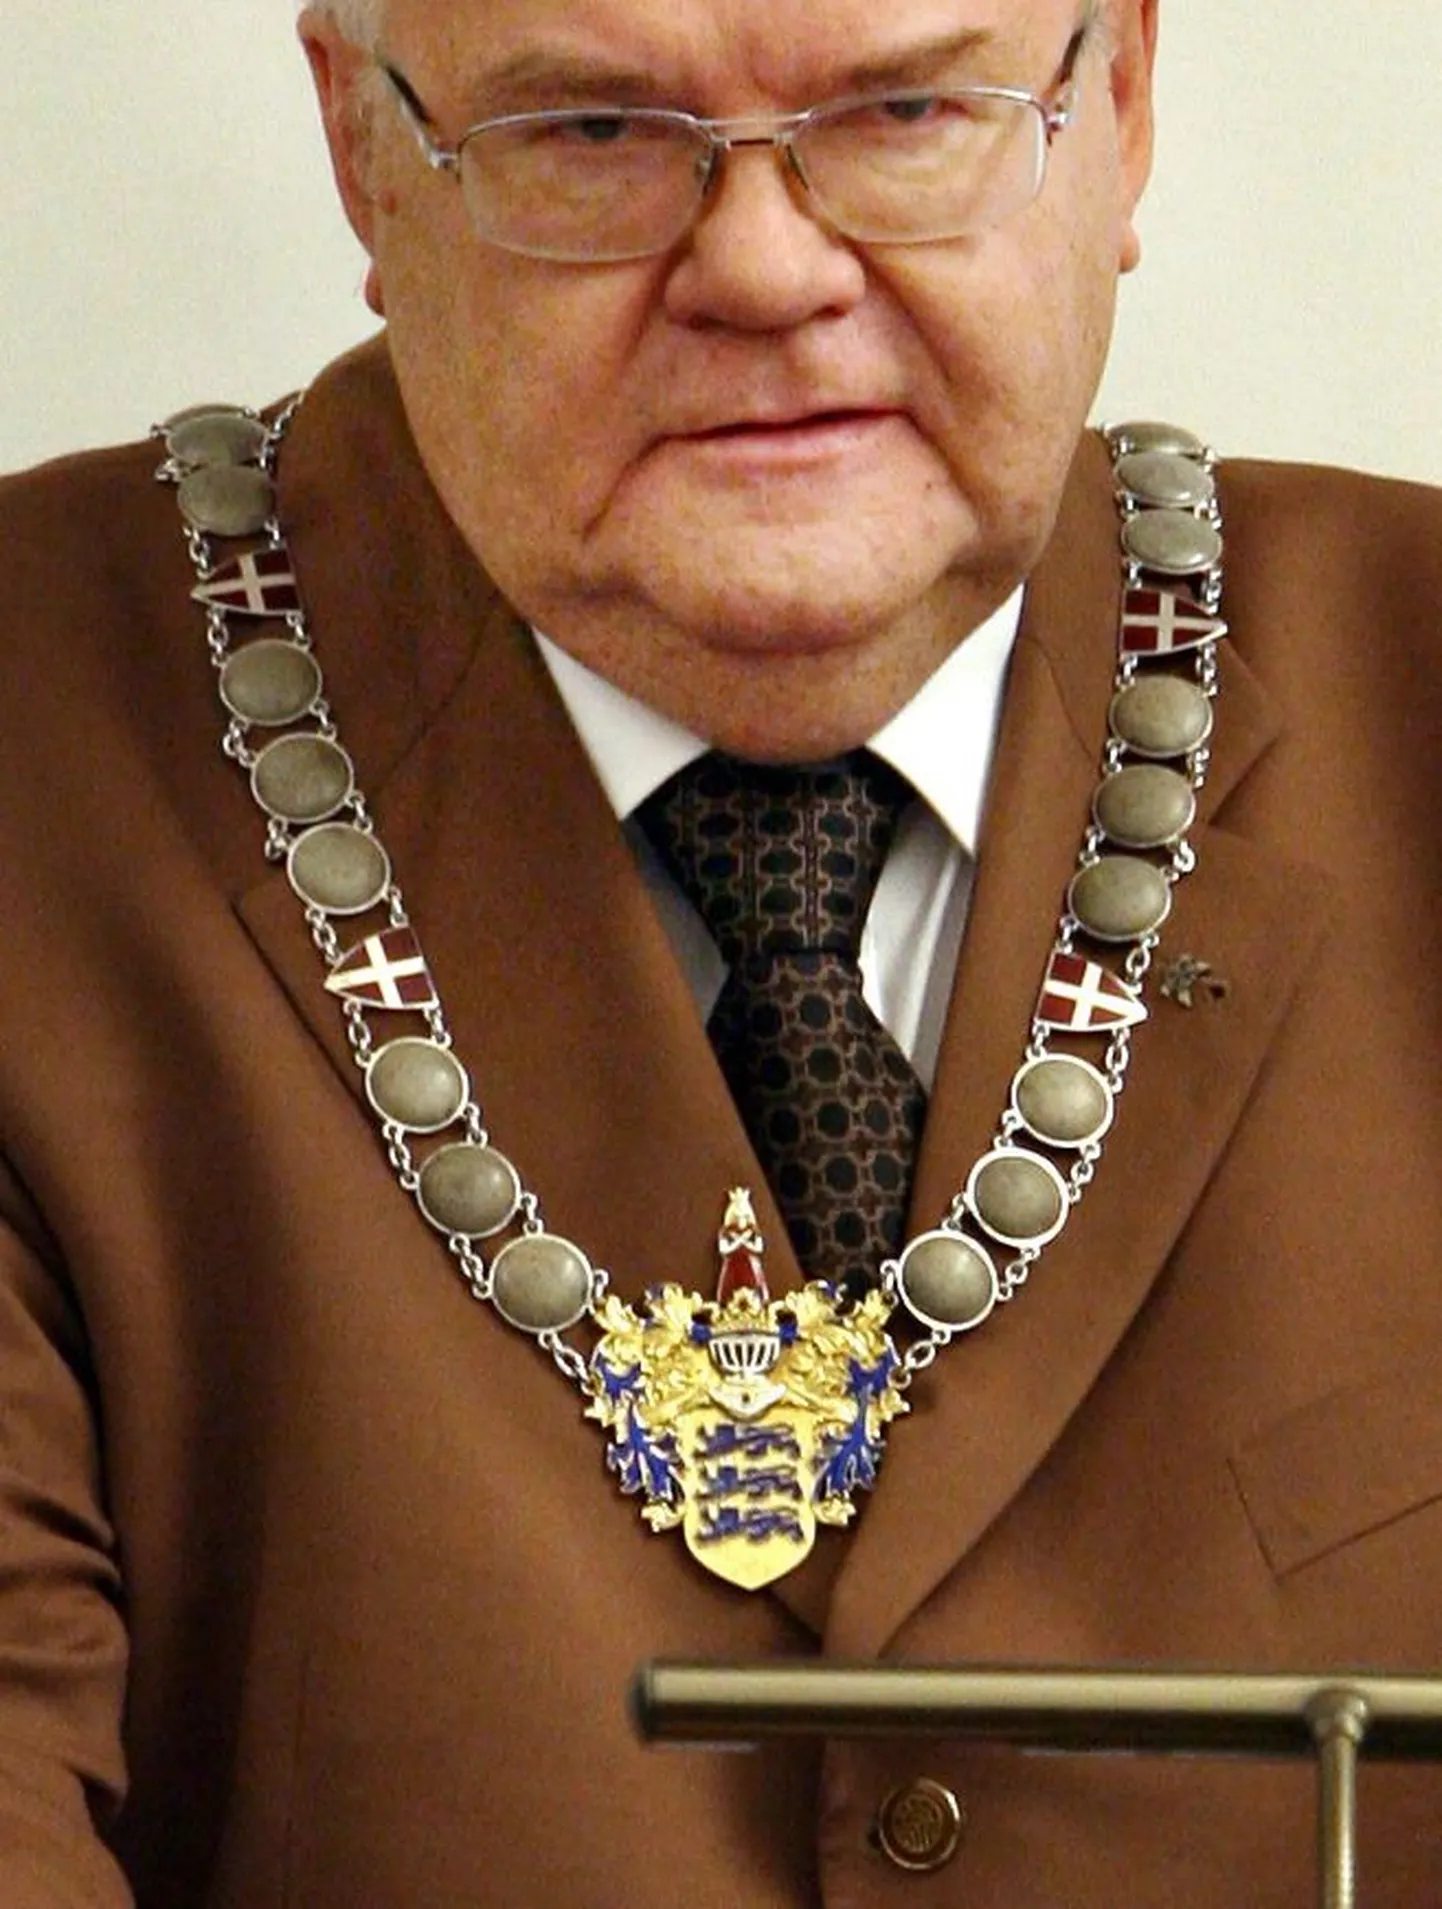 Pikka aega Edgar Savisaare kaelas olnud Tallinna linnapea ametikett paneb seda ihaldavad inimesed tegutsema